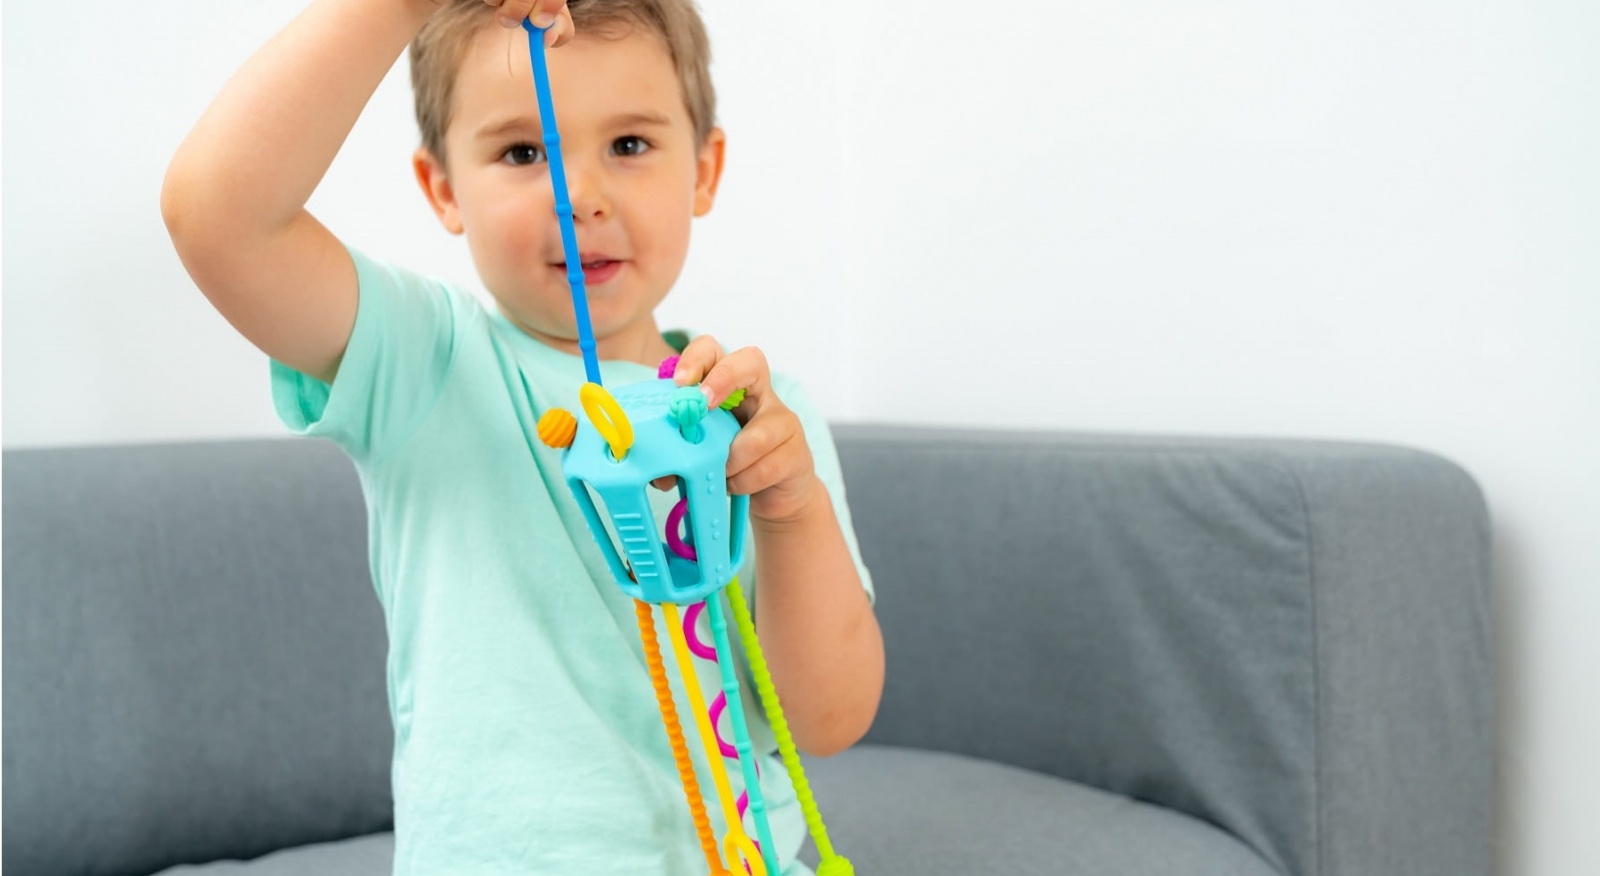 Zabawka sensoryczna Mobi - Przeciąganiec Zippee